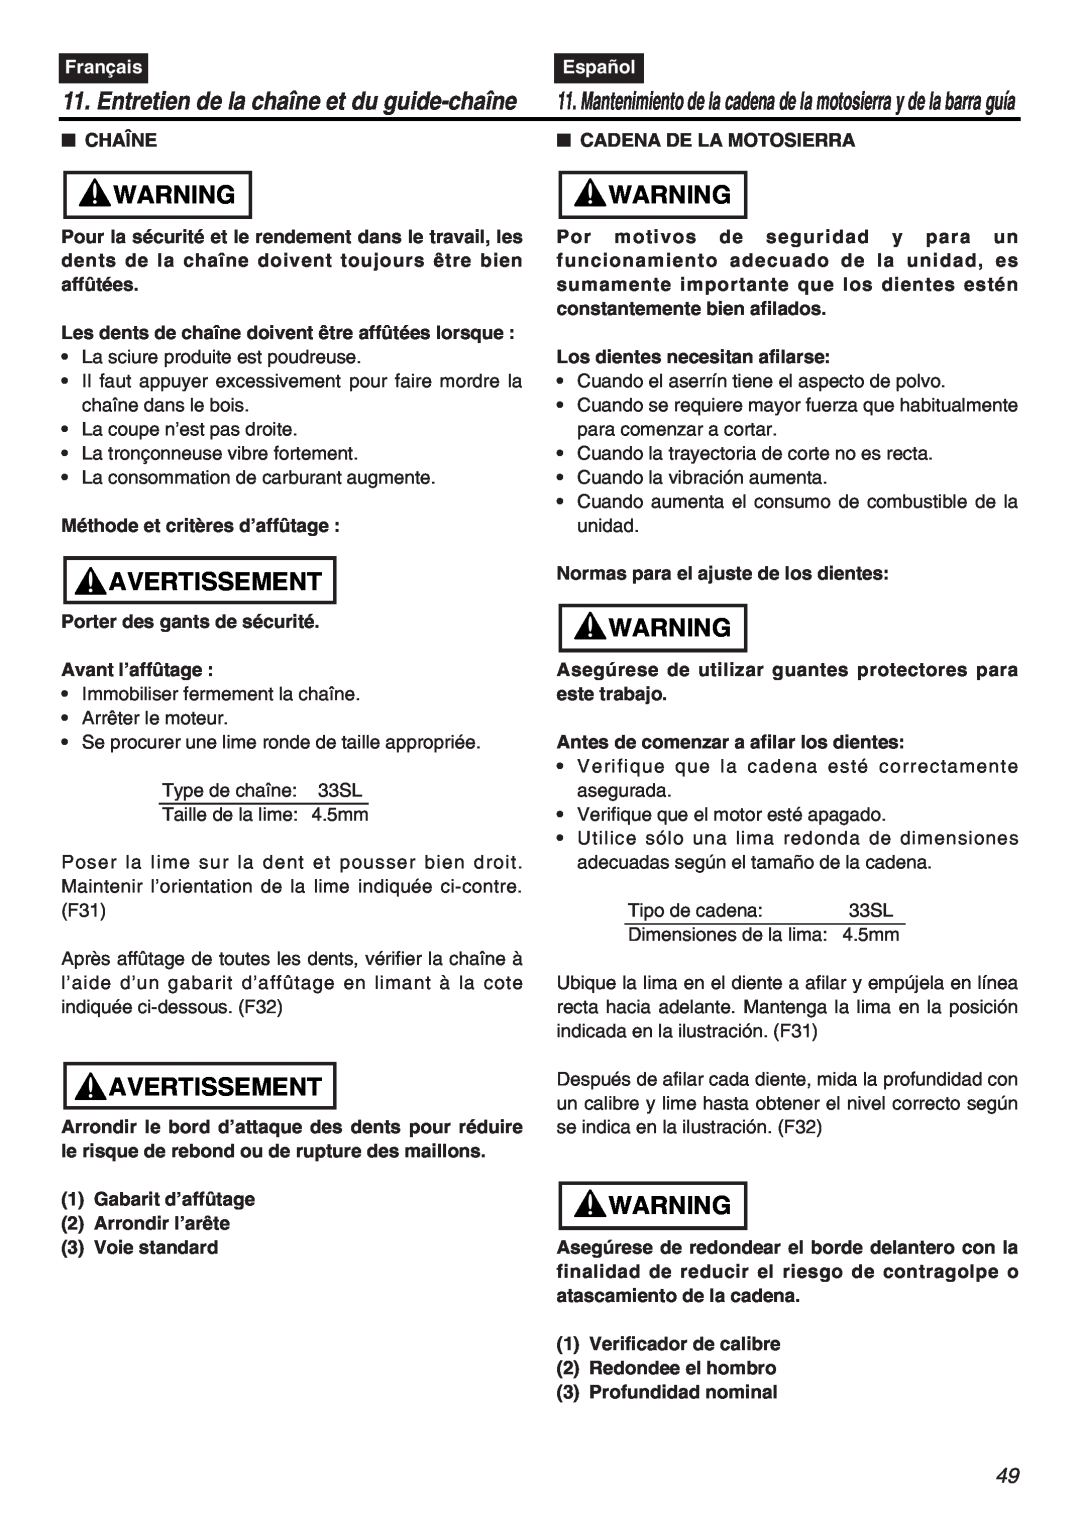 RedMax G5000AVS manual Entretien de la chaîne et du guide-chaîne, Avertissement, Français, Español, Chaîne 